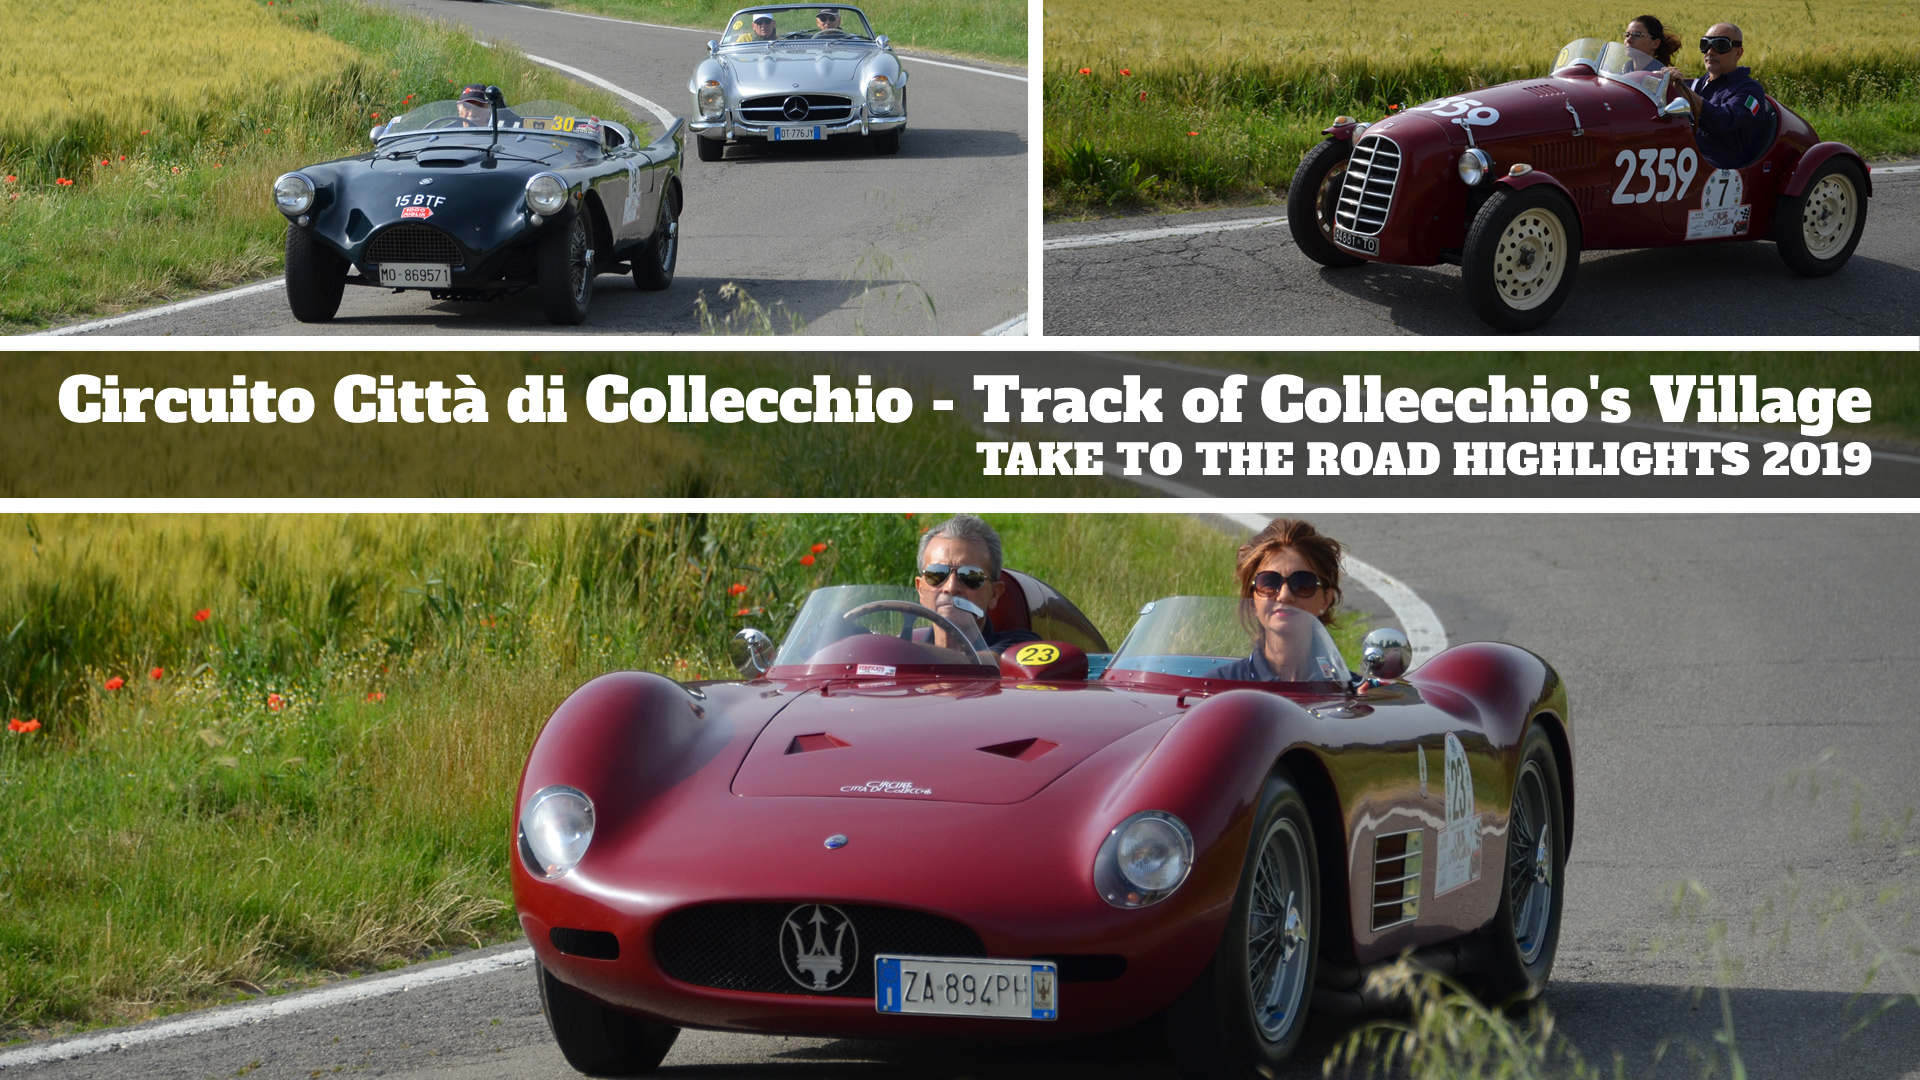 Highlights from the Circuito Citta di Collecchio 2019